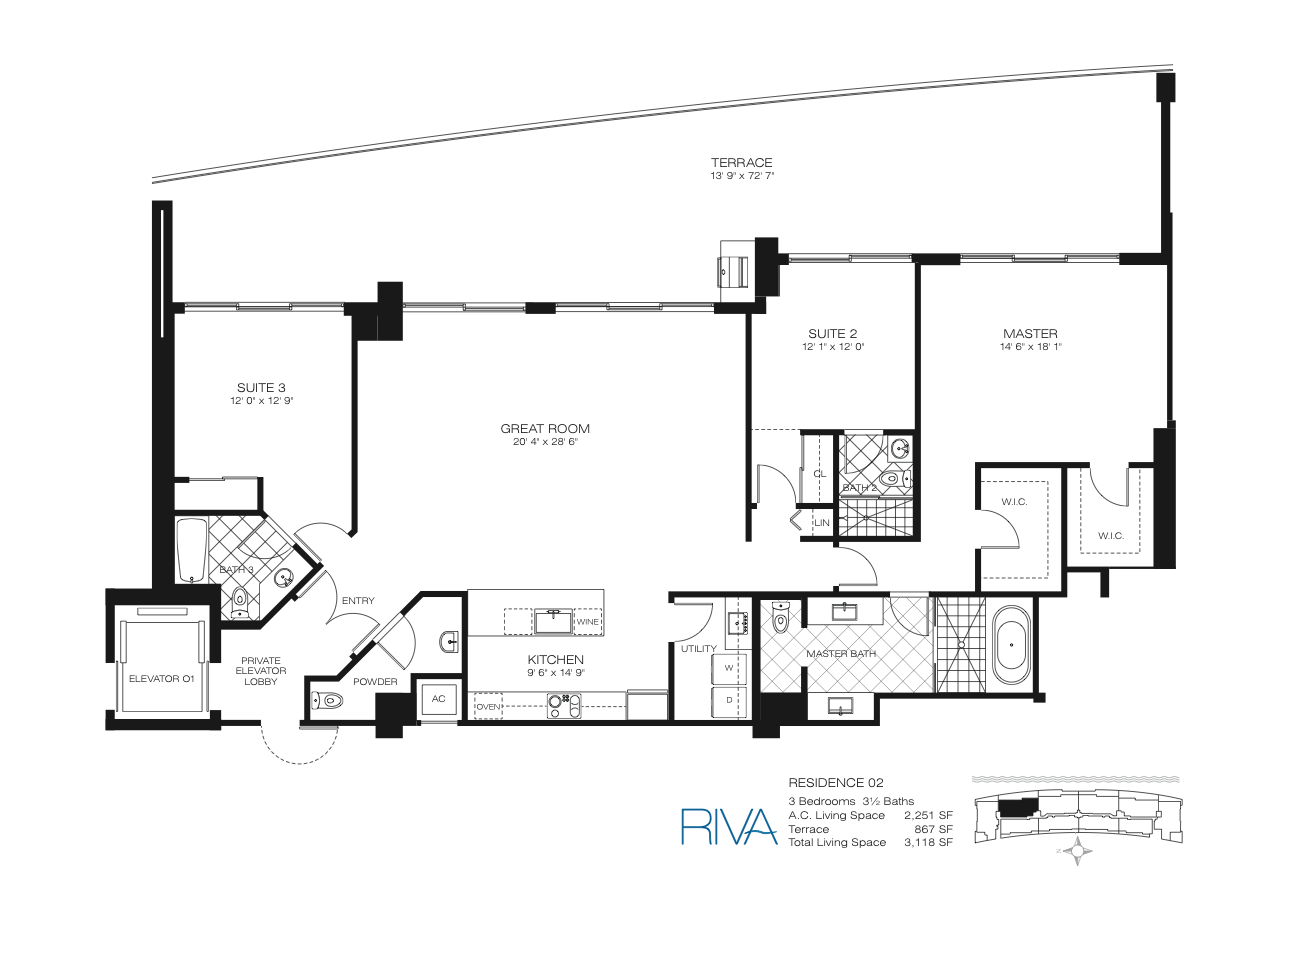 Floor Plan for Riva Fort Lauderdale Floorplans, Residence 02